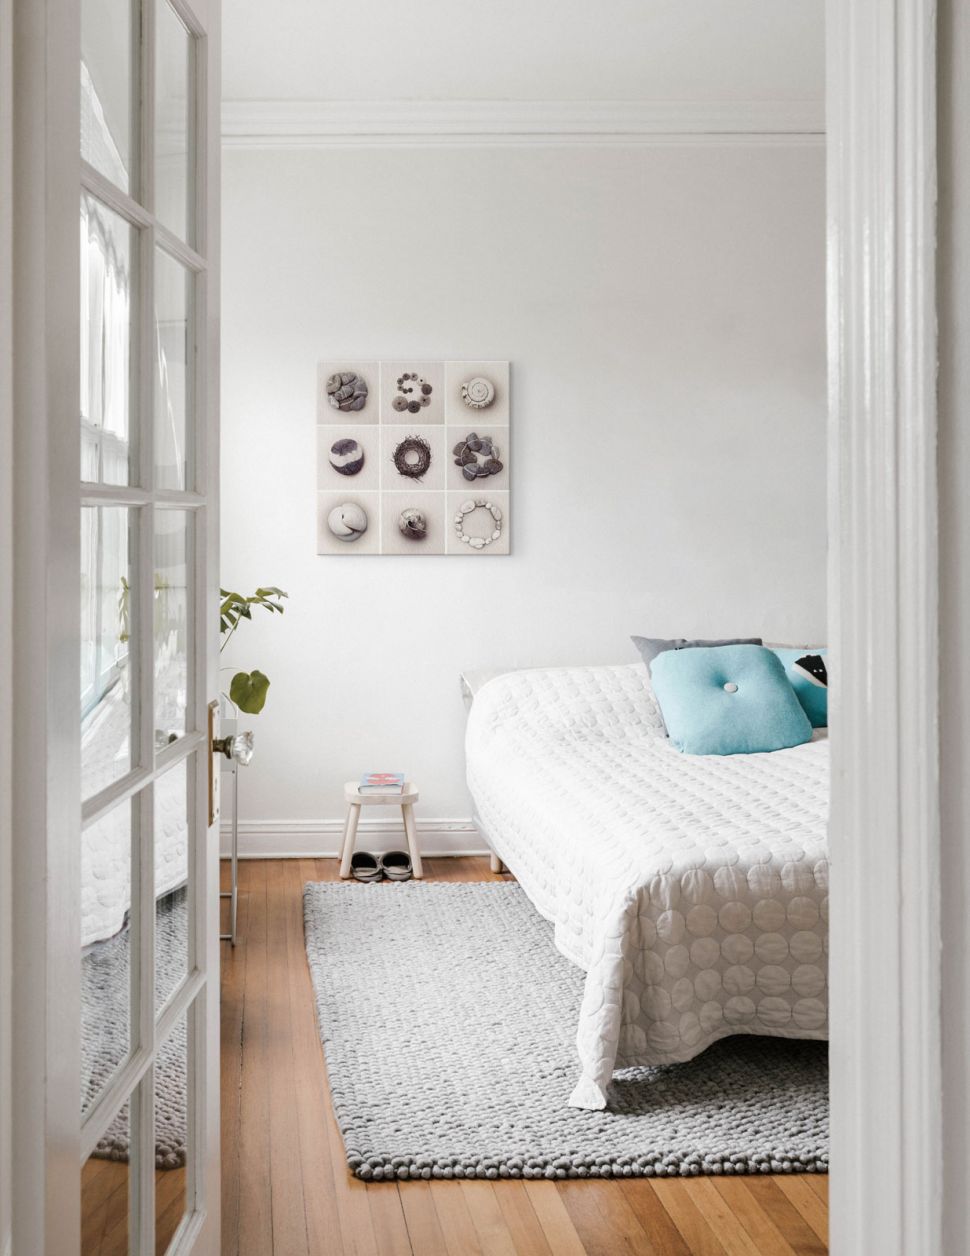 Obraz na płótnie przedstawiający kompozycje z kamieni wiszący na ścianie w sypialni nad łóżkiem